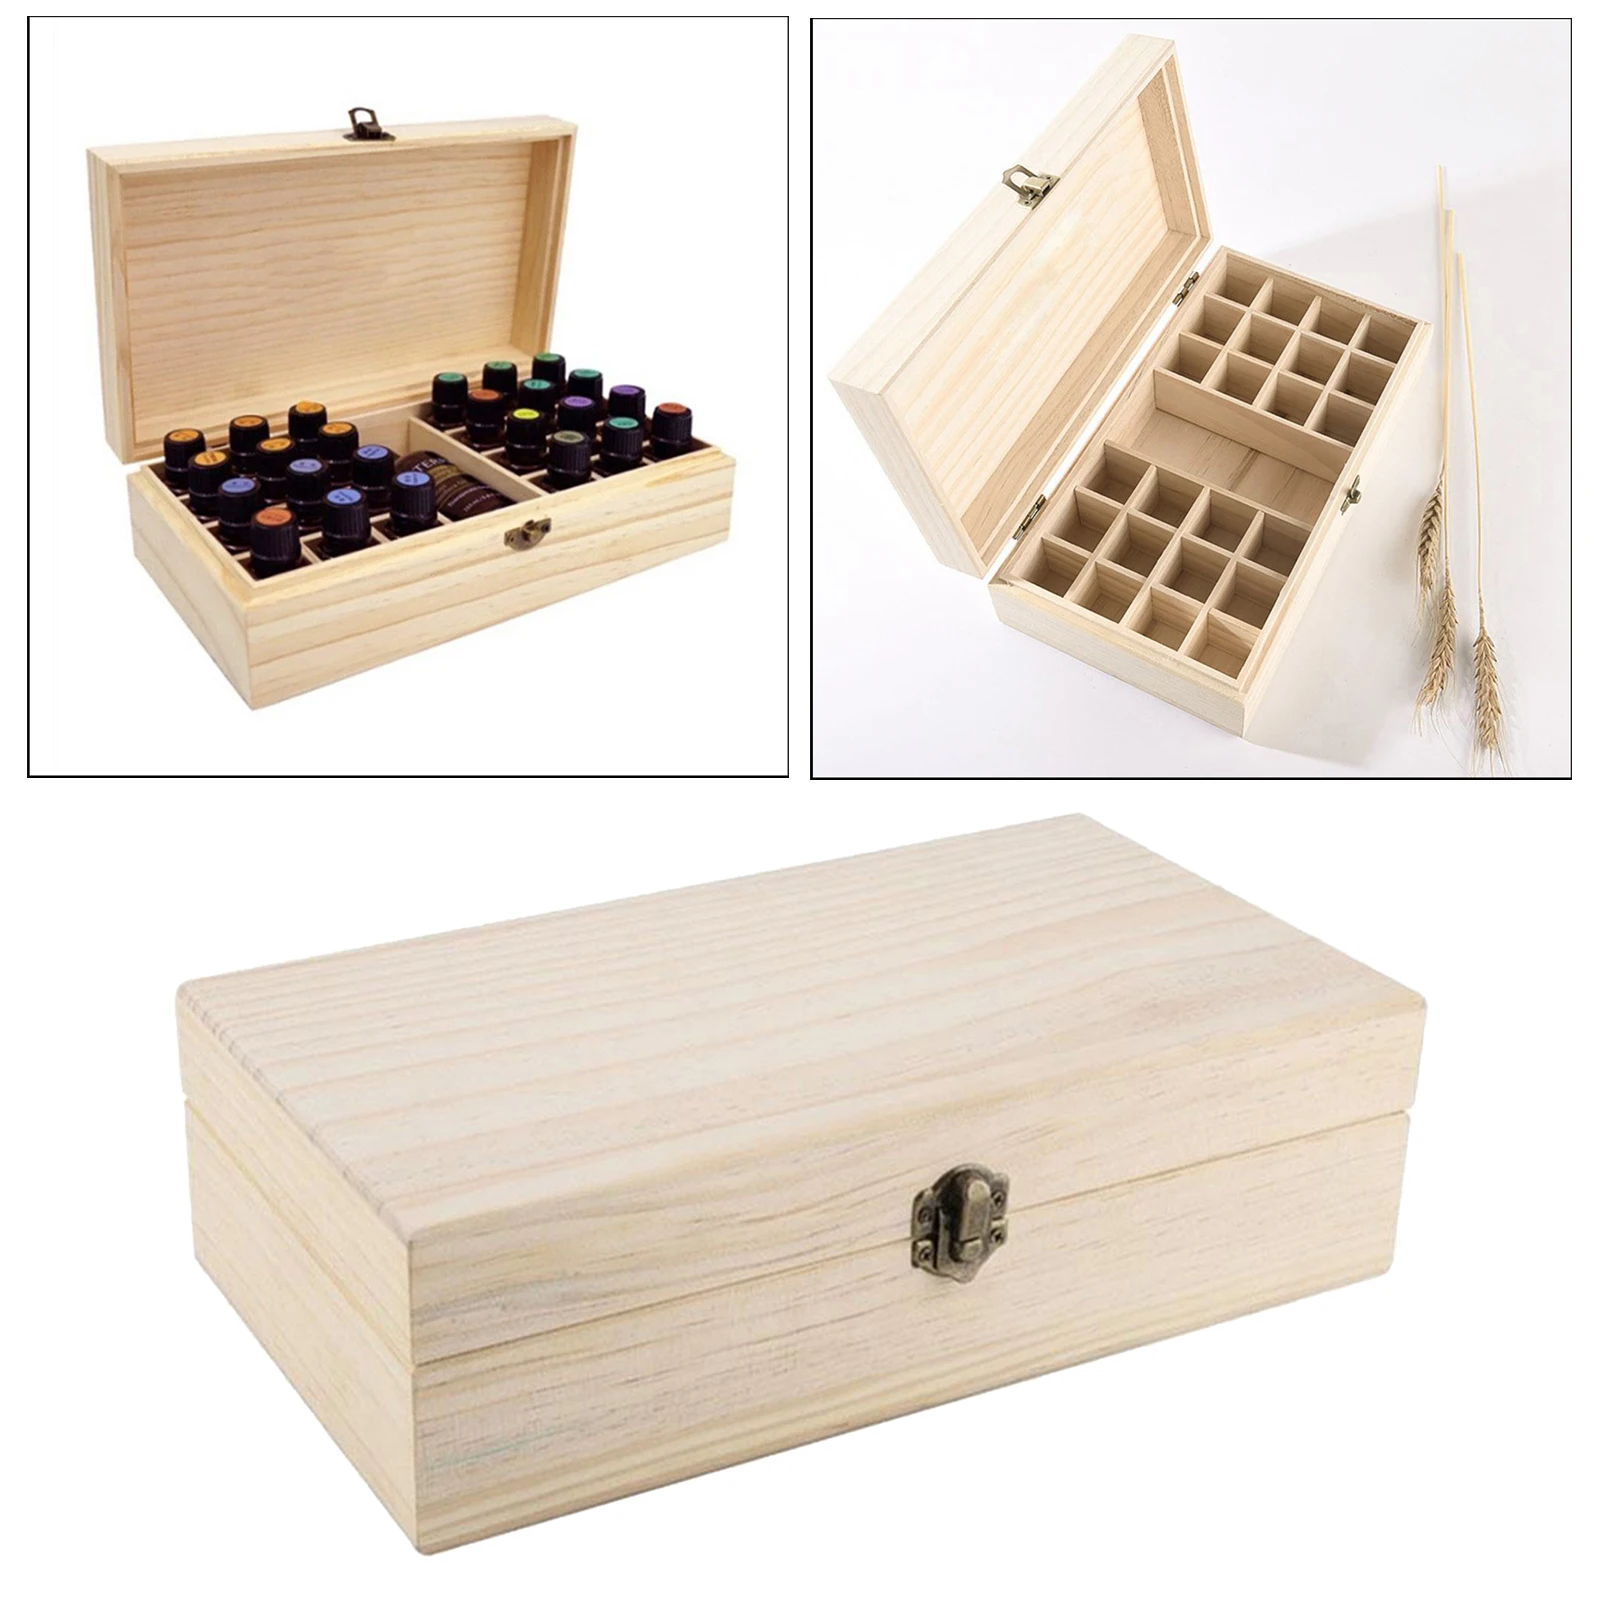 25Slots Essential Oils Storage Box Wooden 5/10/15ml Bottle  Organizer